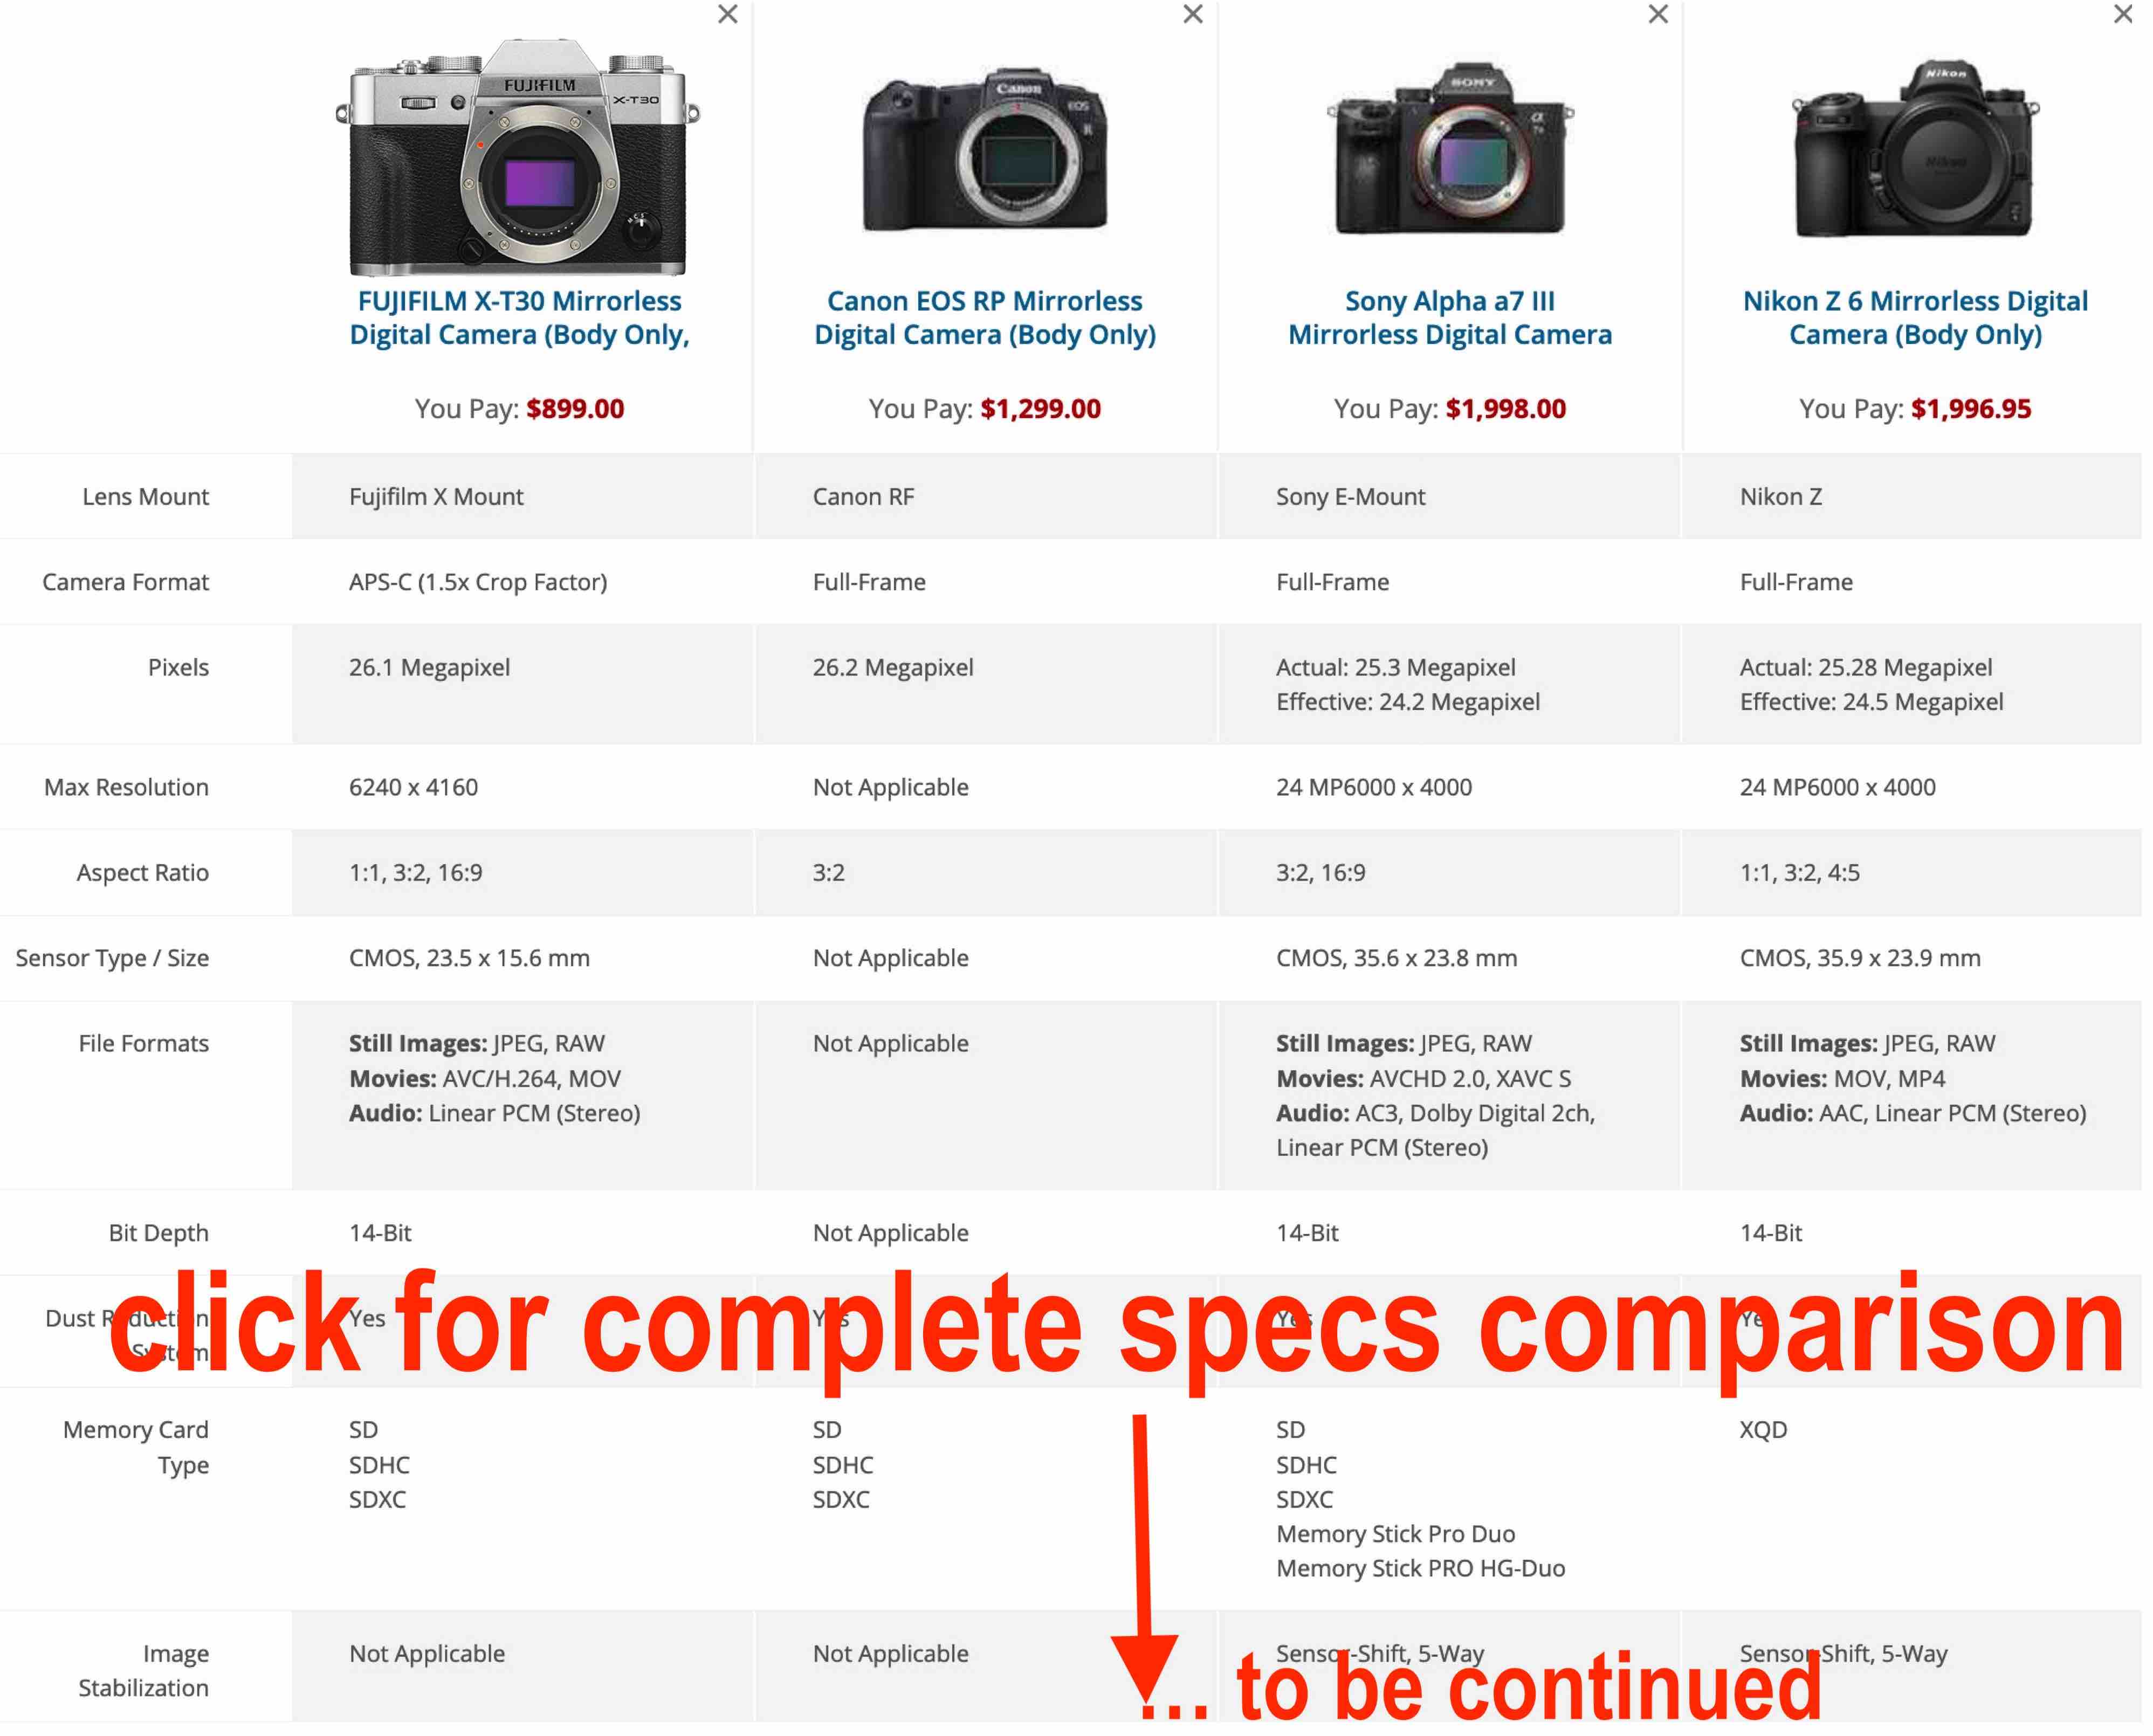 Fujifilm X-T30 vs X-T30 II - The 5 main differences - Mirrorless